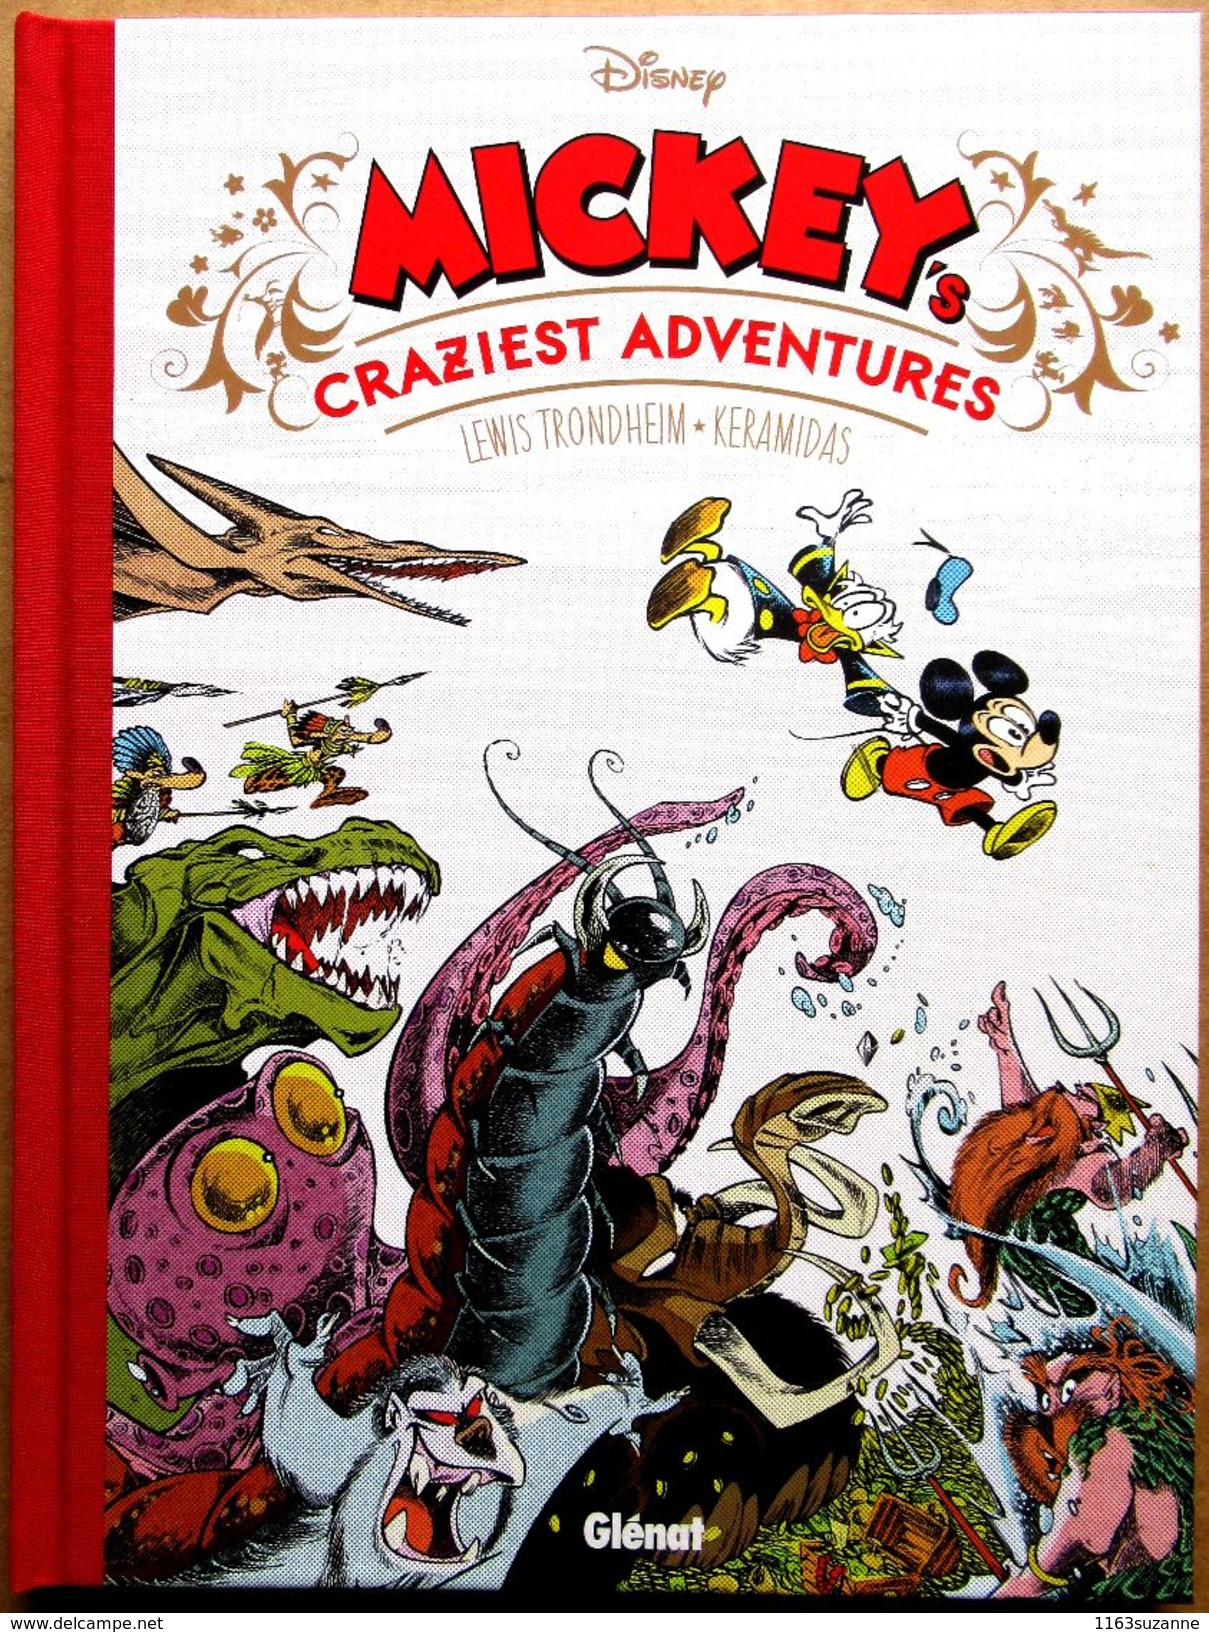 EO Lewis Trondheim & Nicolas Keramidas : MICKEY'S CRAZIEST ADVENTURES (Disney/Ed. Glénat, 2016) - Disney